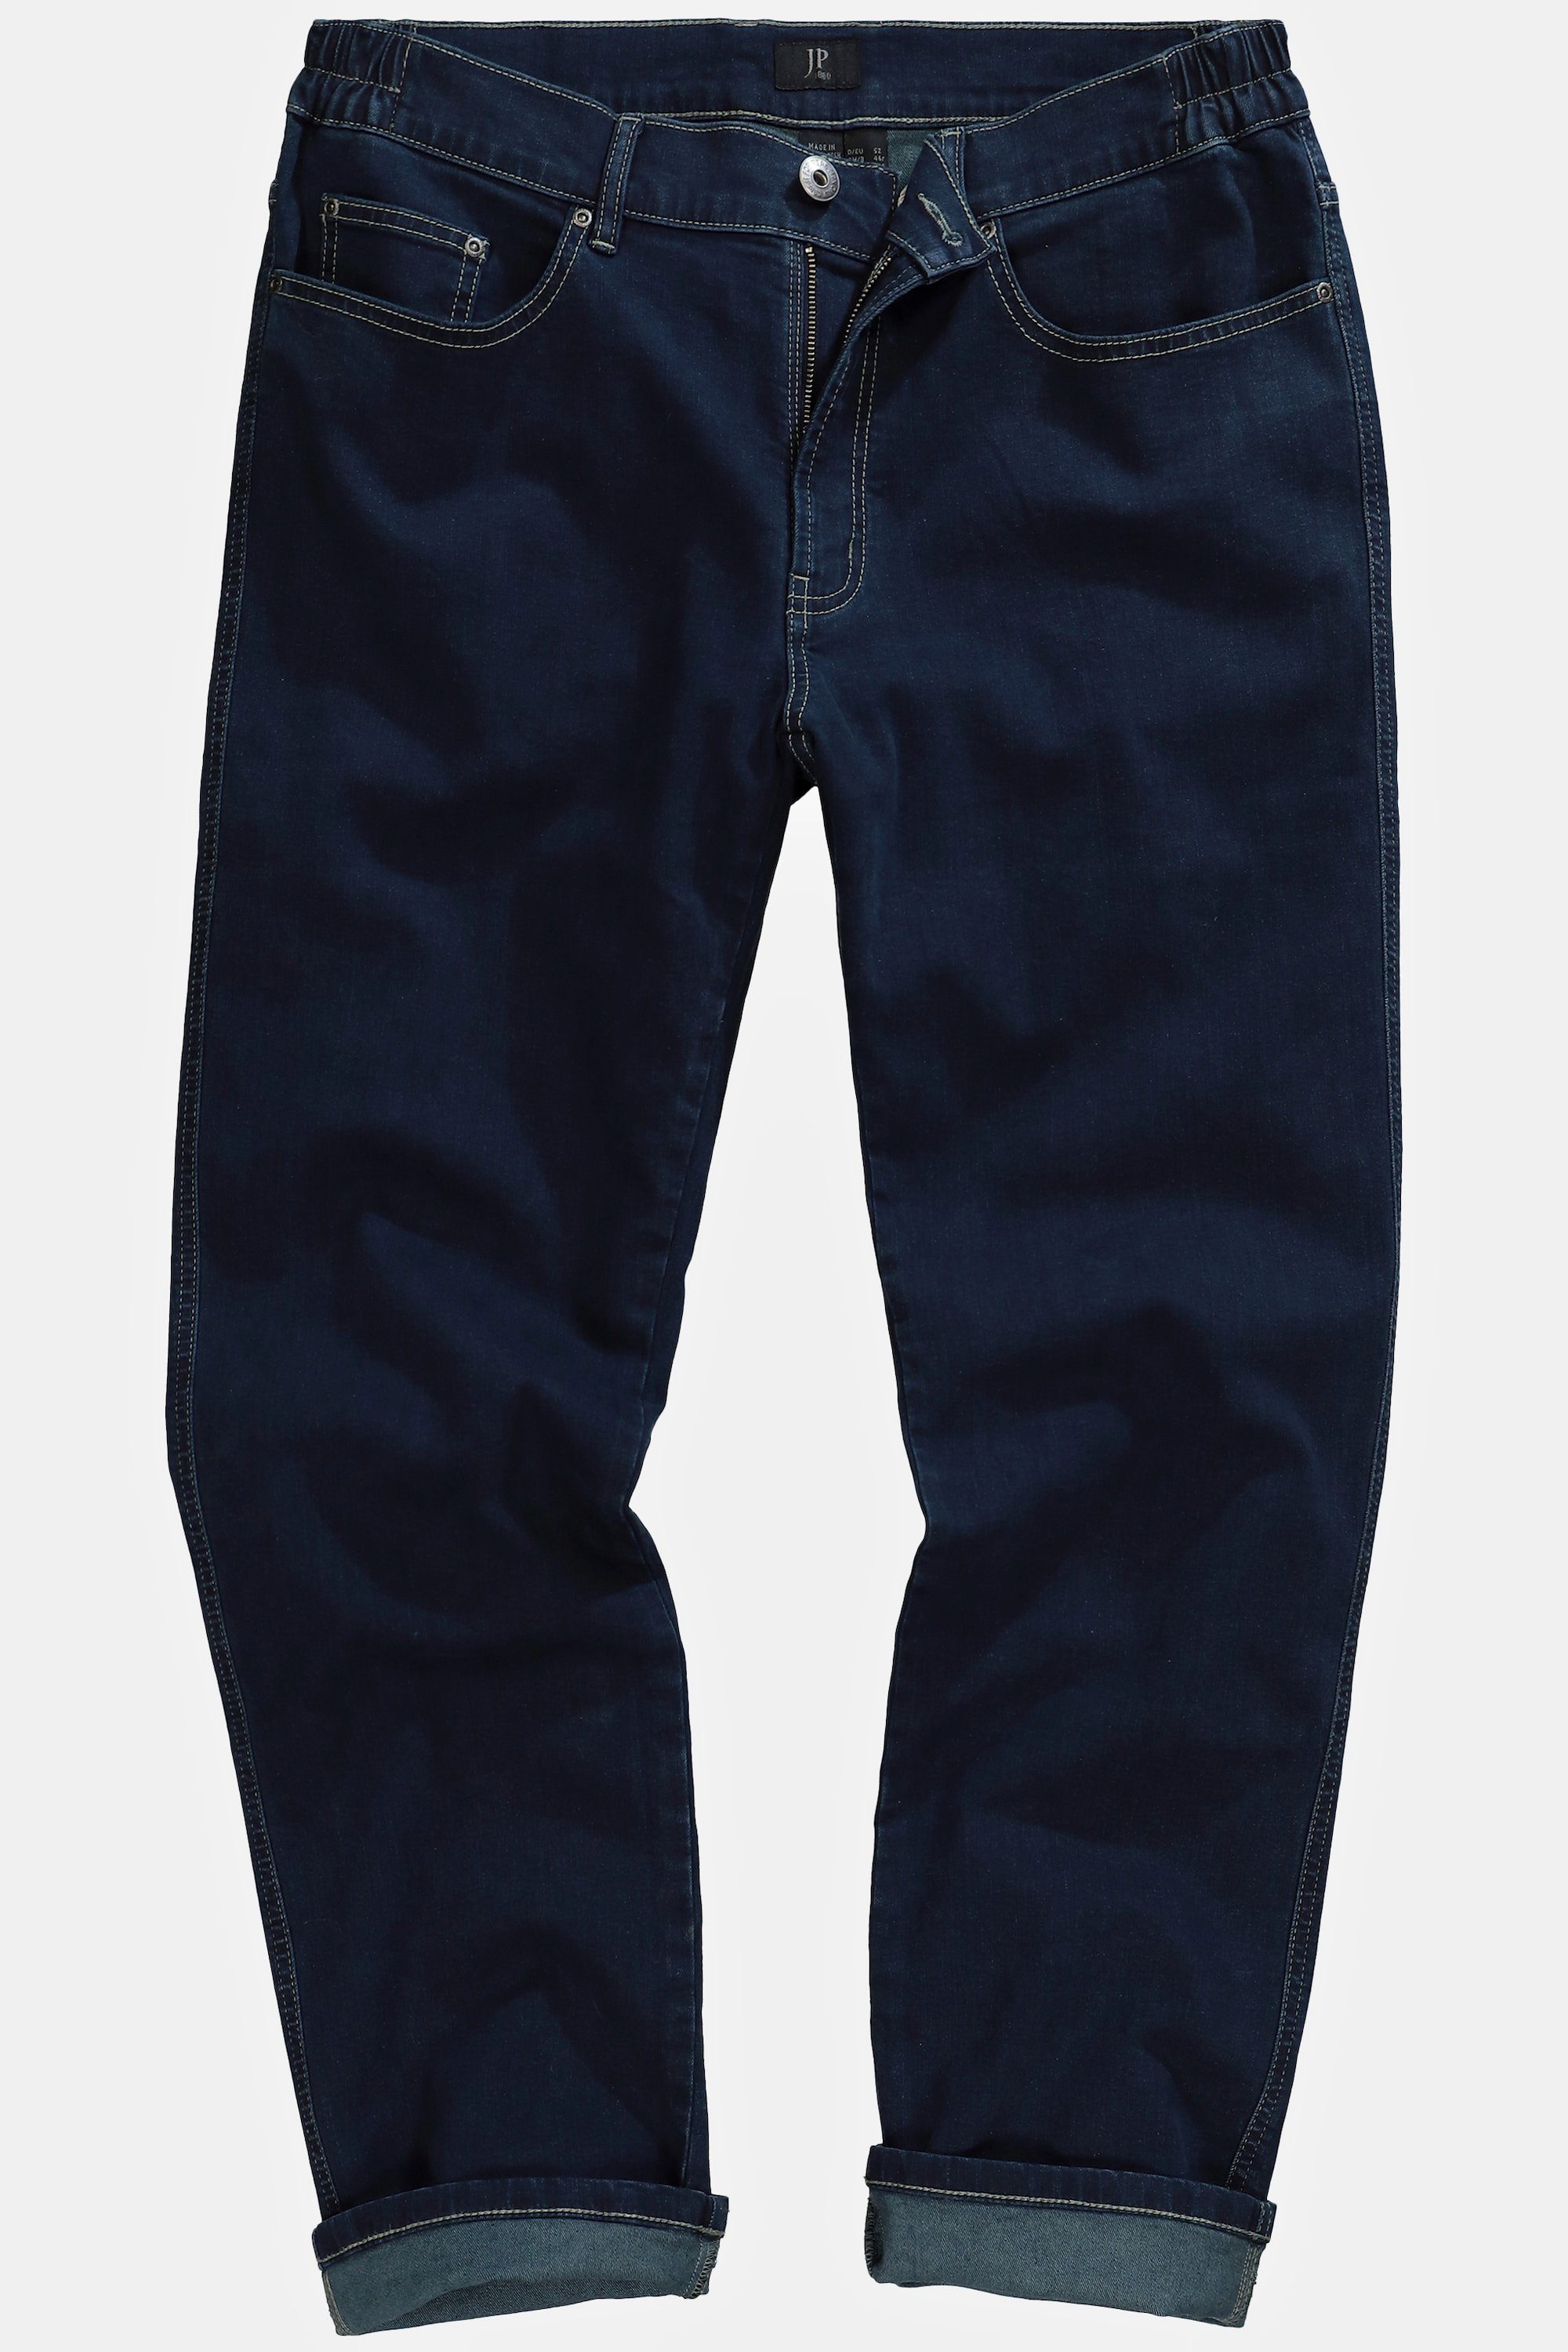 bis Traveller-Jeans Regular Cargohose JP1880 blue denim 36/72 Fit Gr.